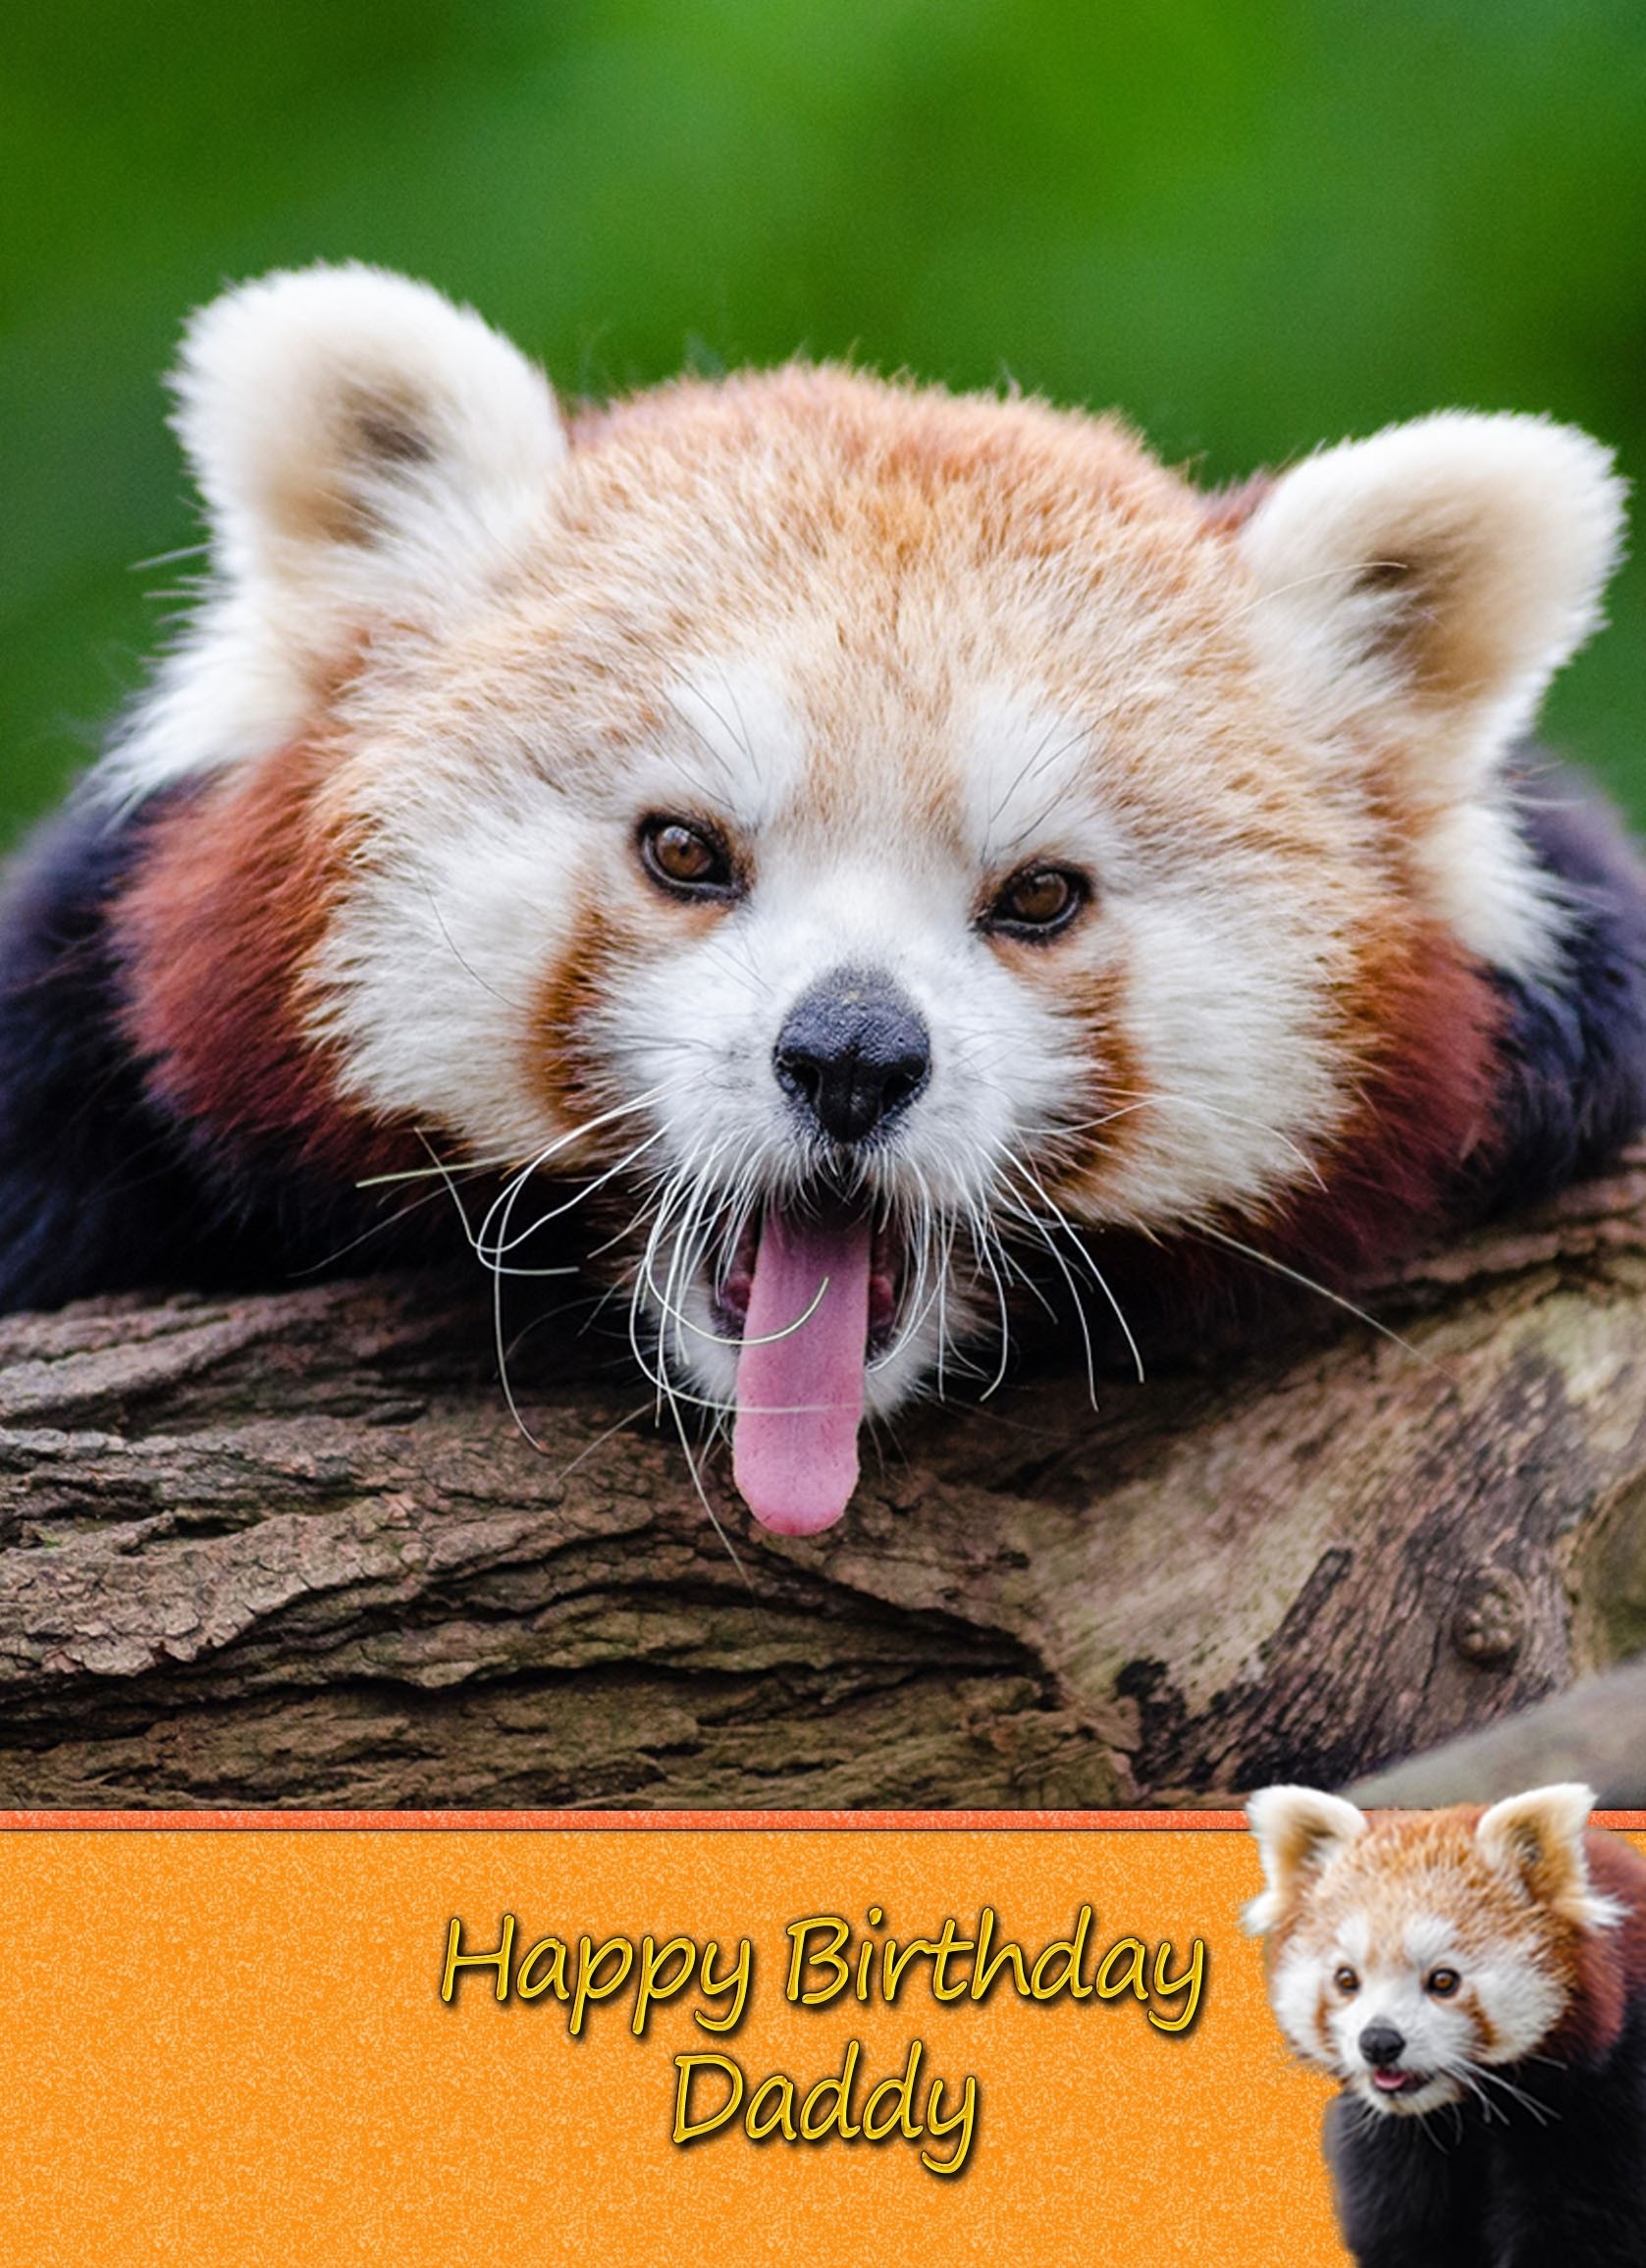 Personalised Red Panda Card